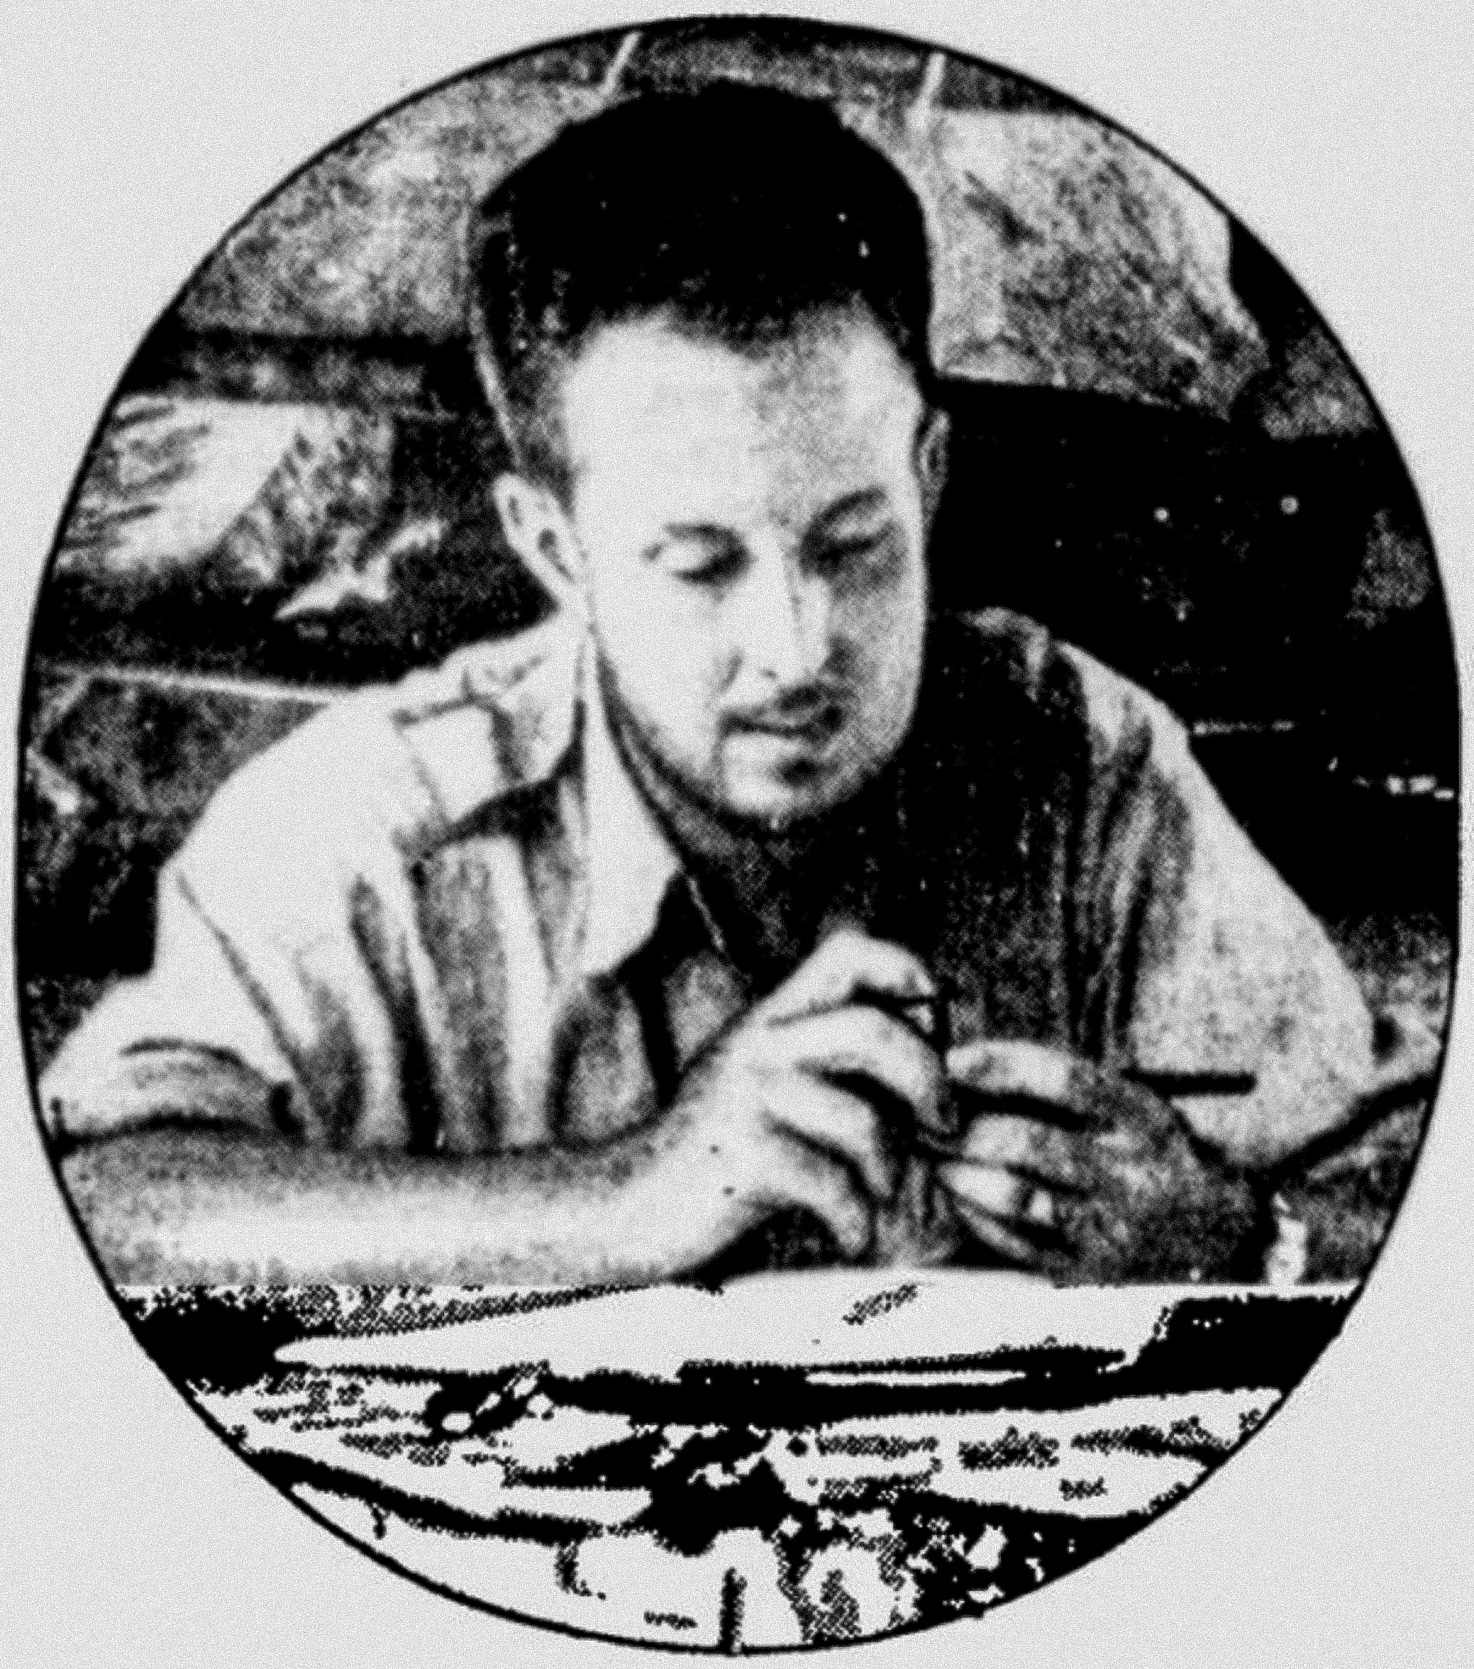 Американский исследователь Теодор Морде сидит за своим столом в тропических лесах Гондураса во время исследования Москитии в 1940 году.